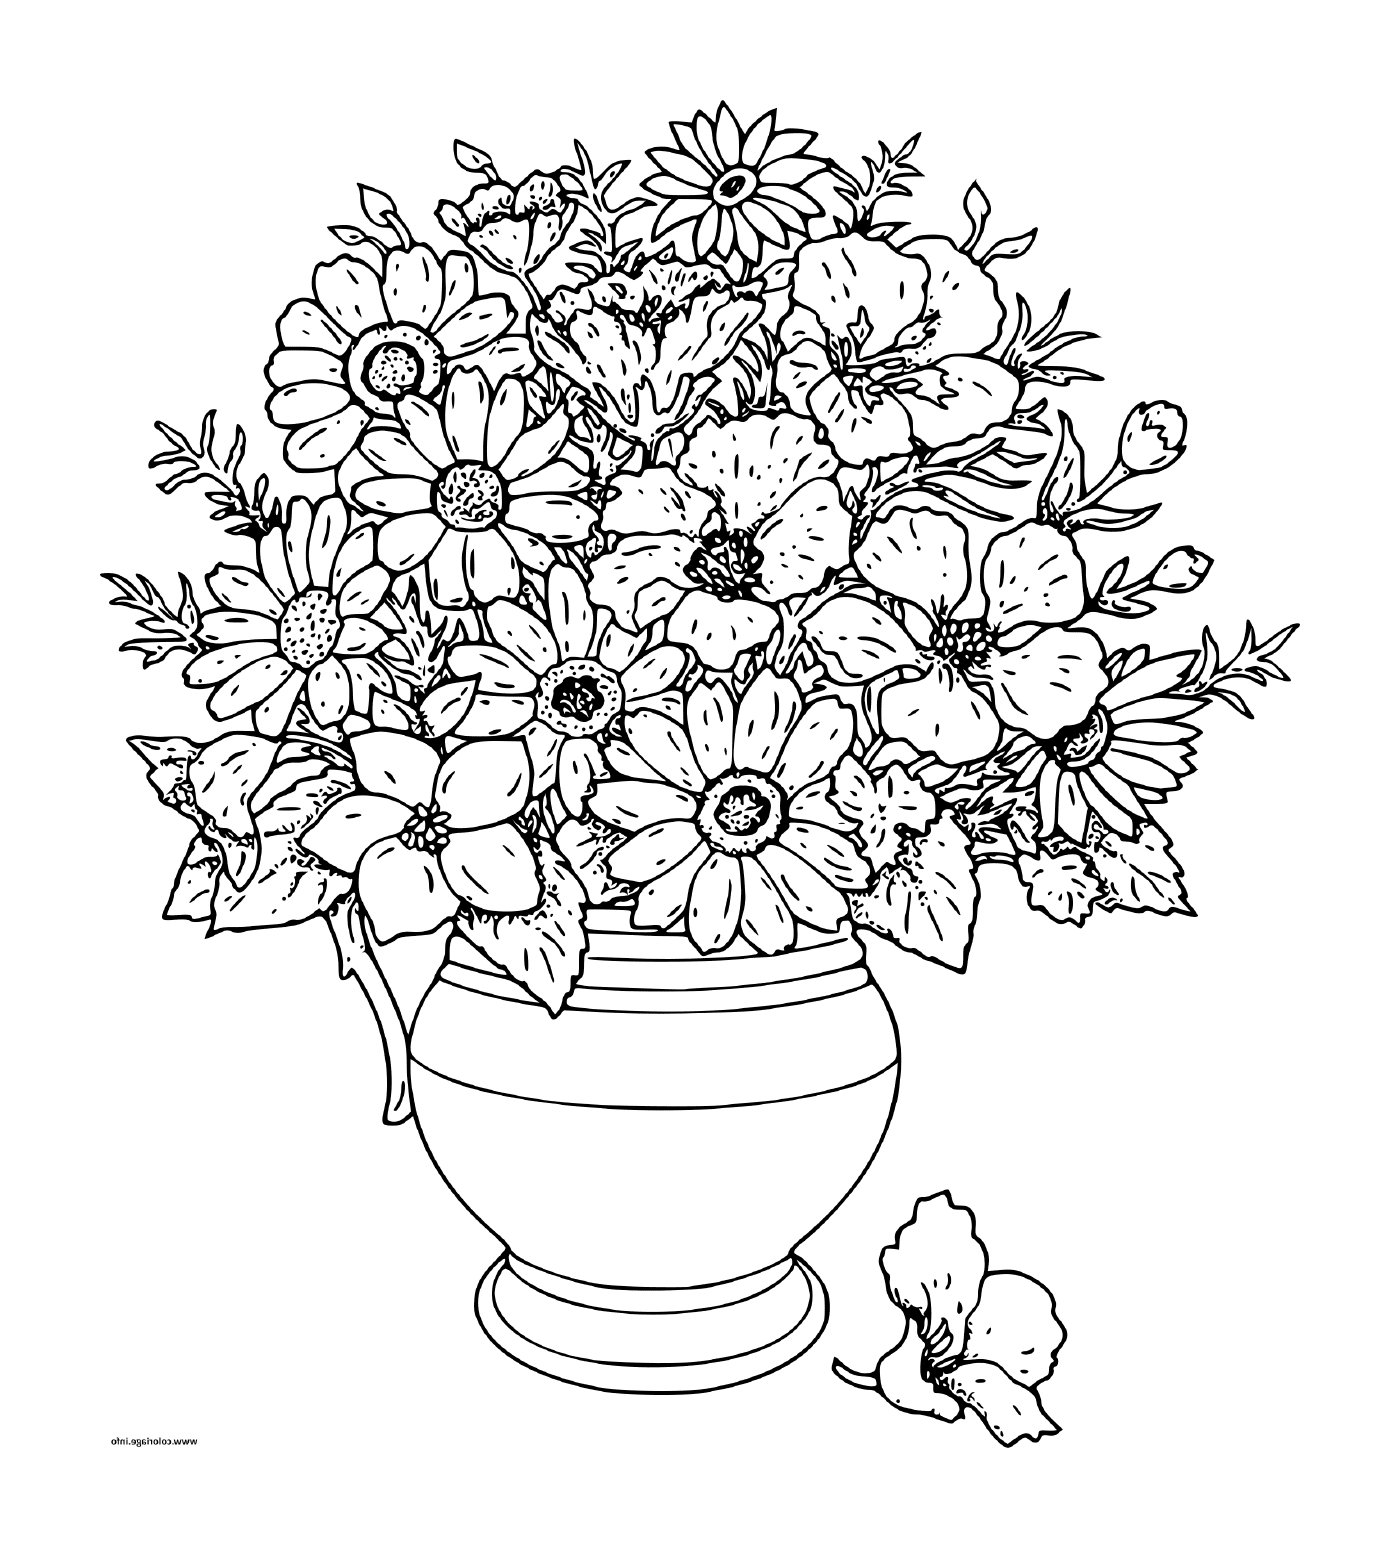  Un mazzo di fiori in un vaso 